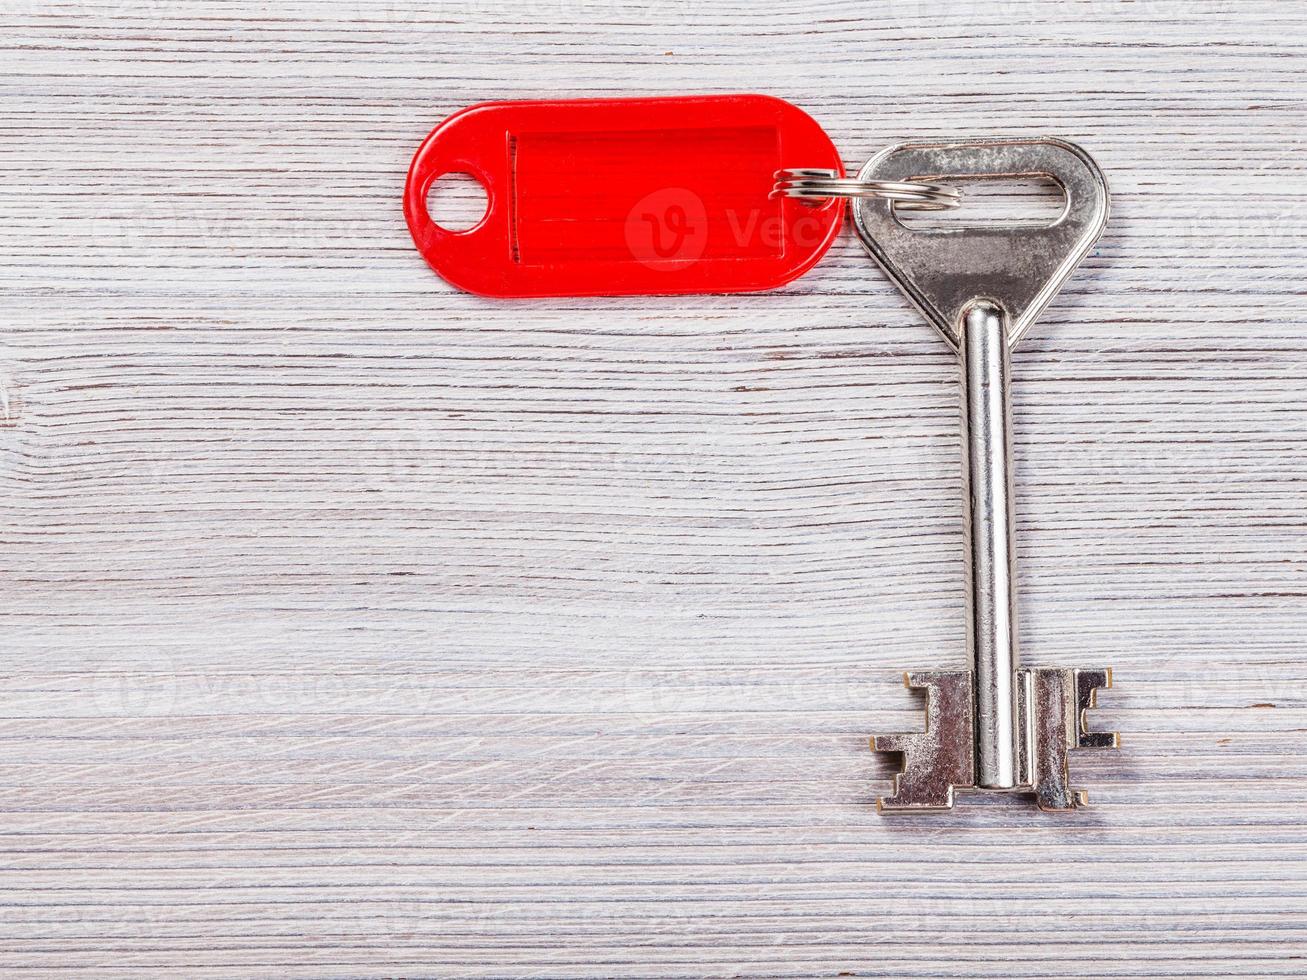 groot deur sleutel met rood sleutel keten Aan houten bord foto